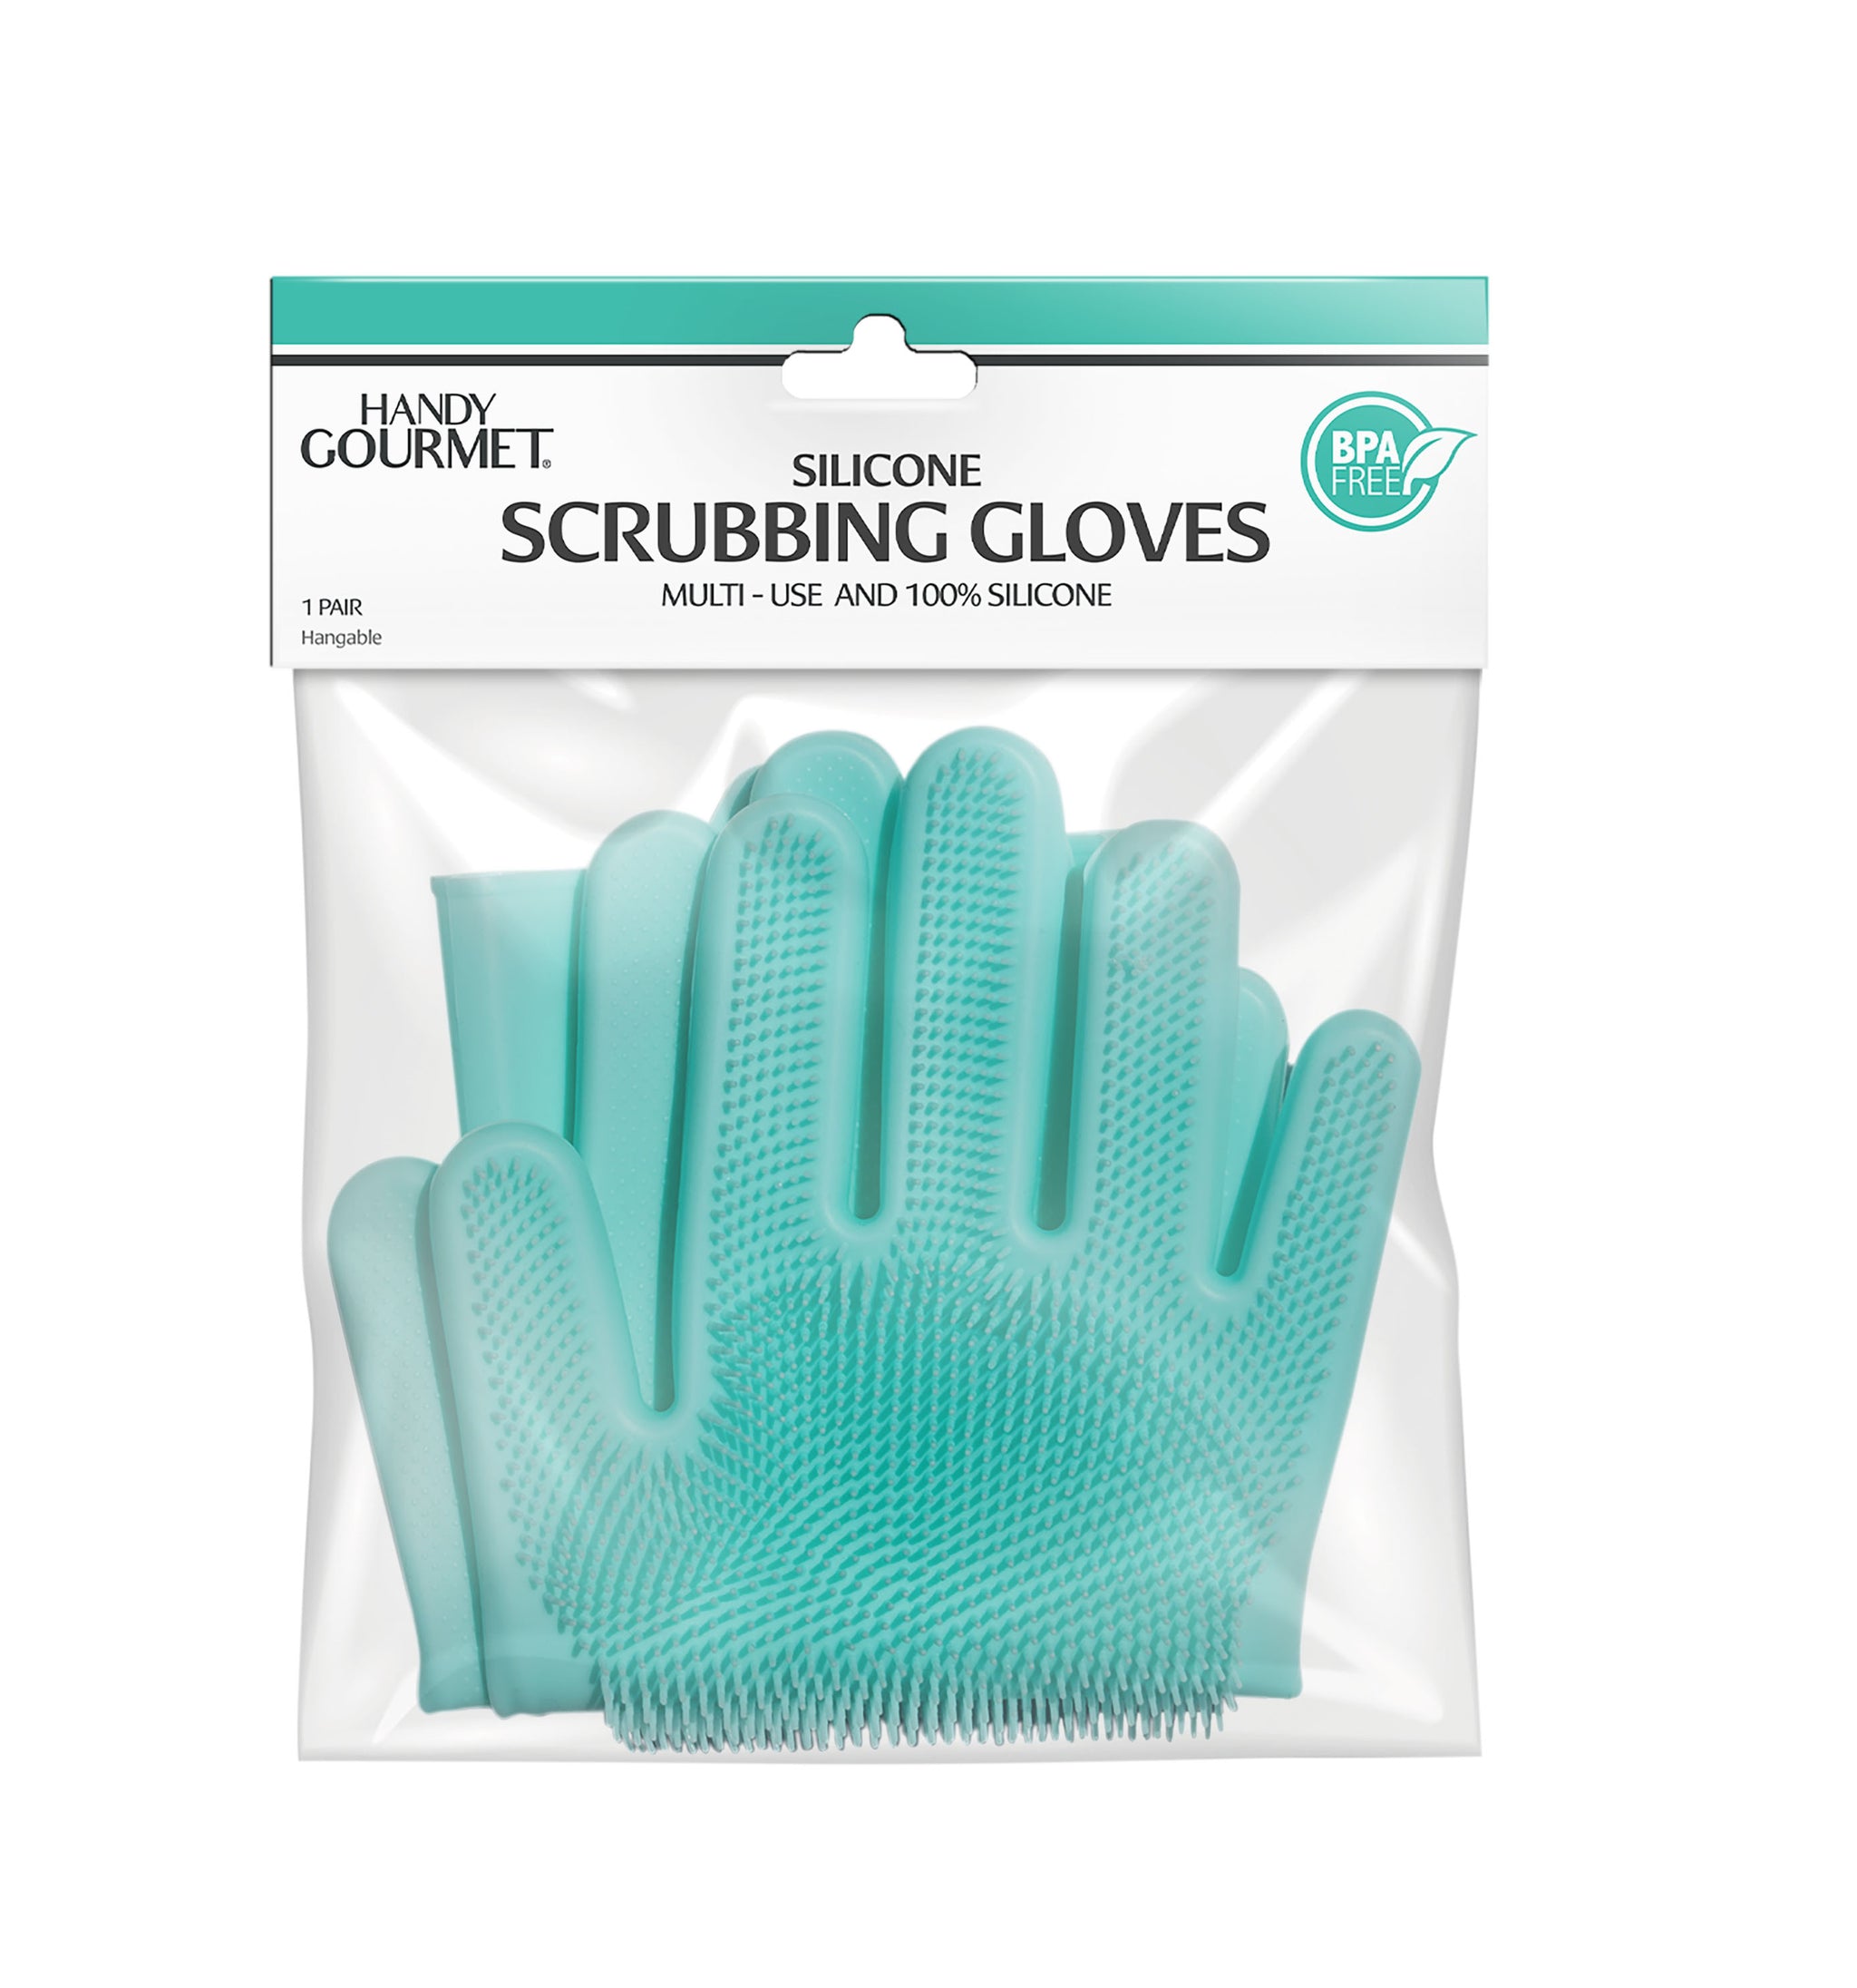 Silicone Scrubbing Gloves - Handy Gourmet